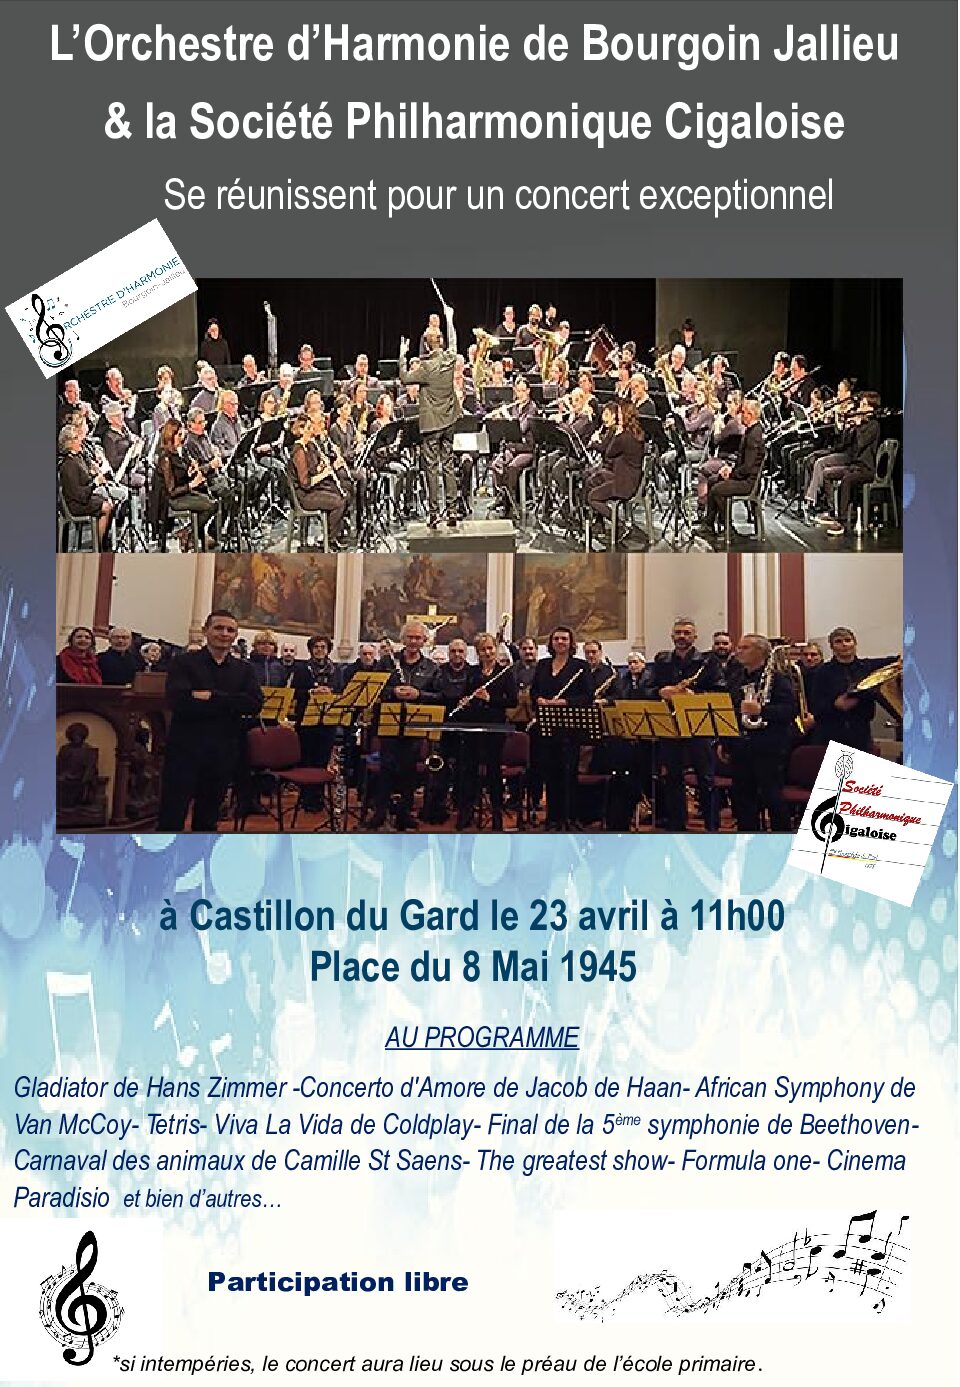 Concert Castillon du Gard